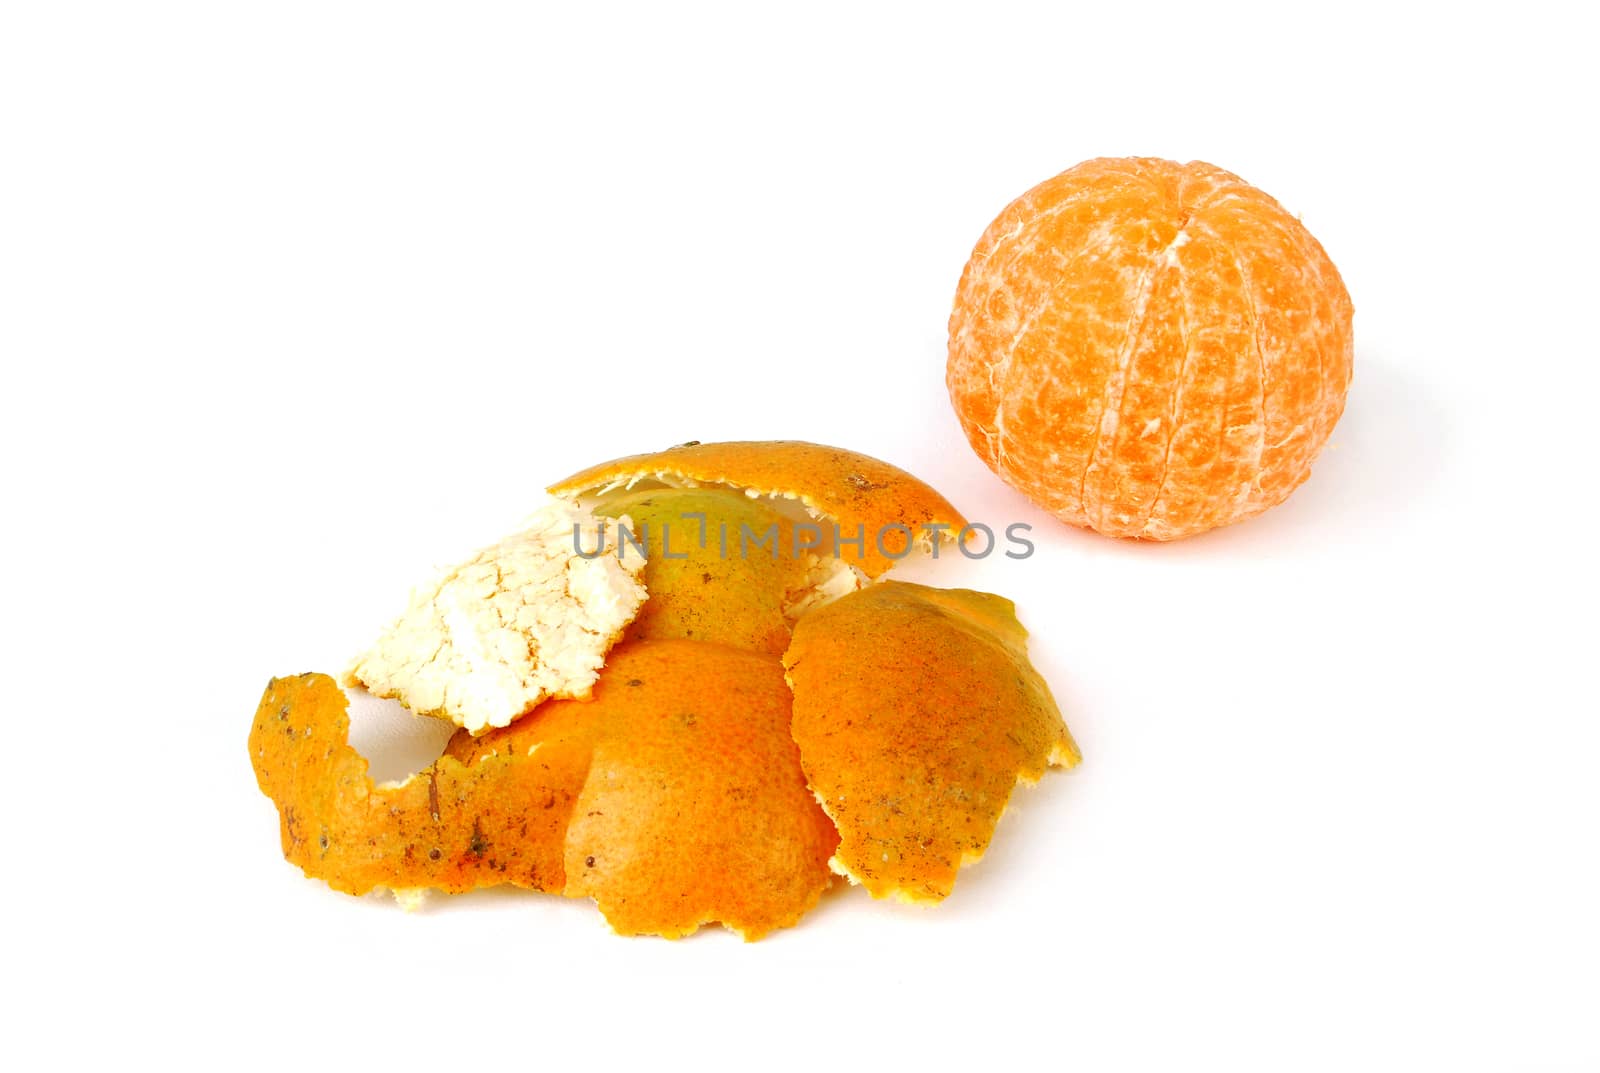 Orange peel on white background.